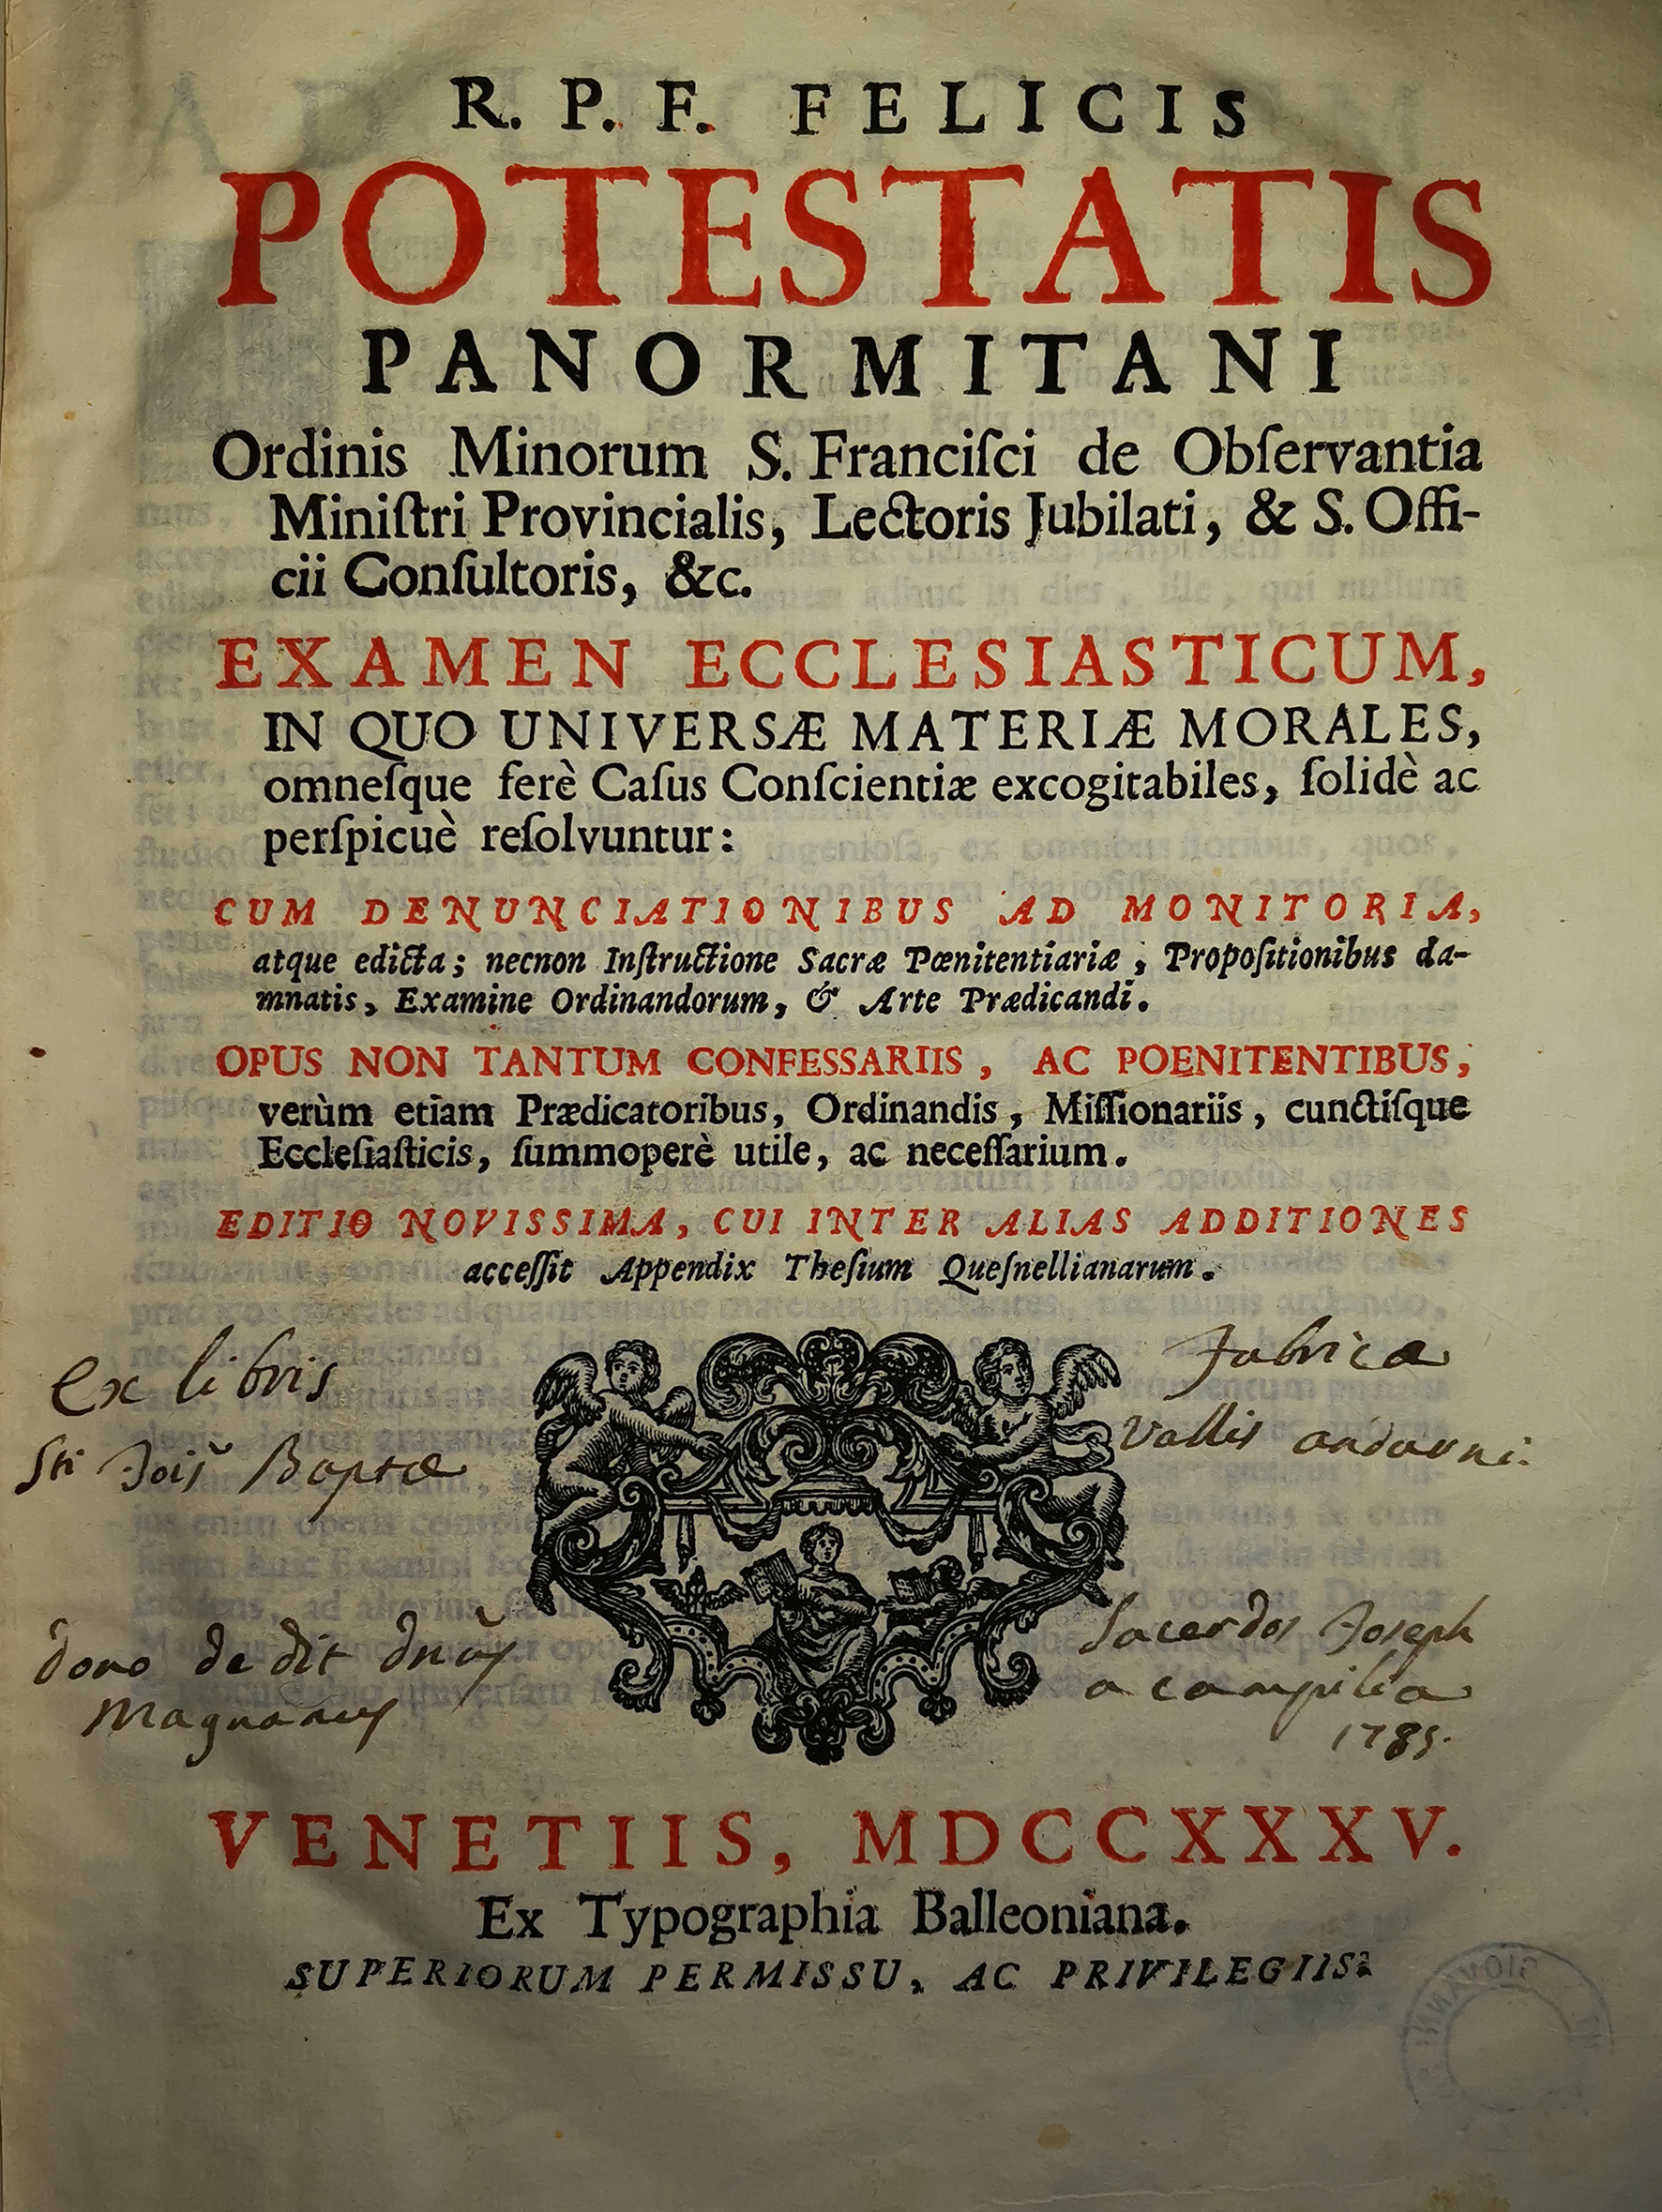 L'Examen ecclesiasticum del 1735